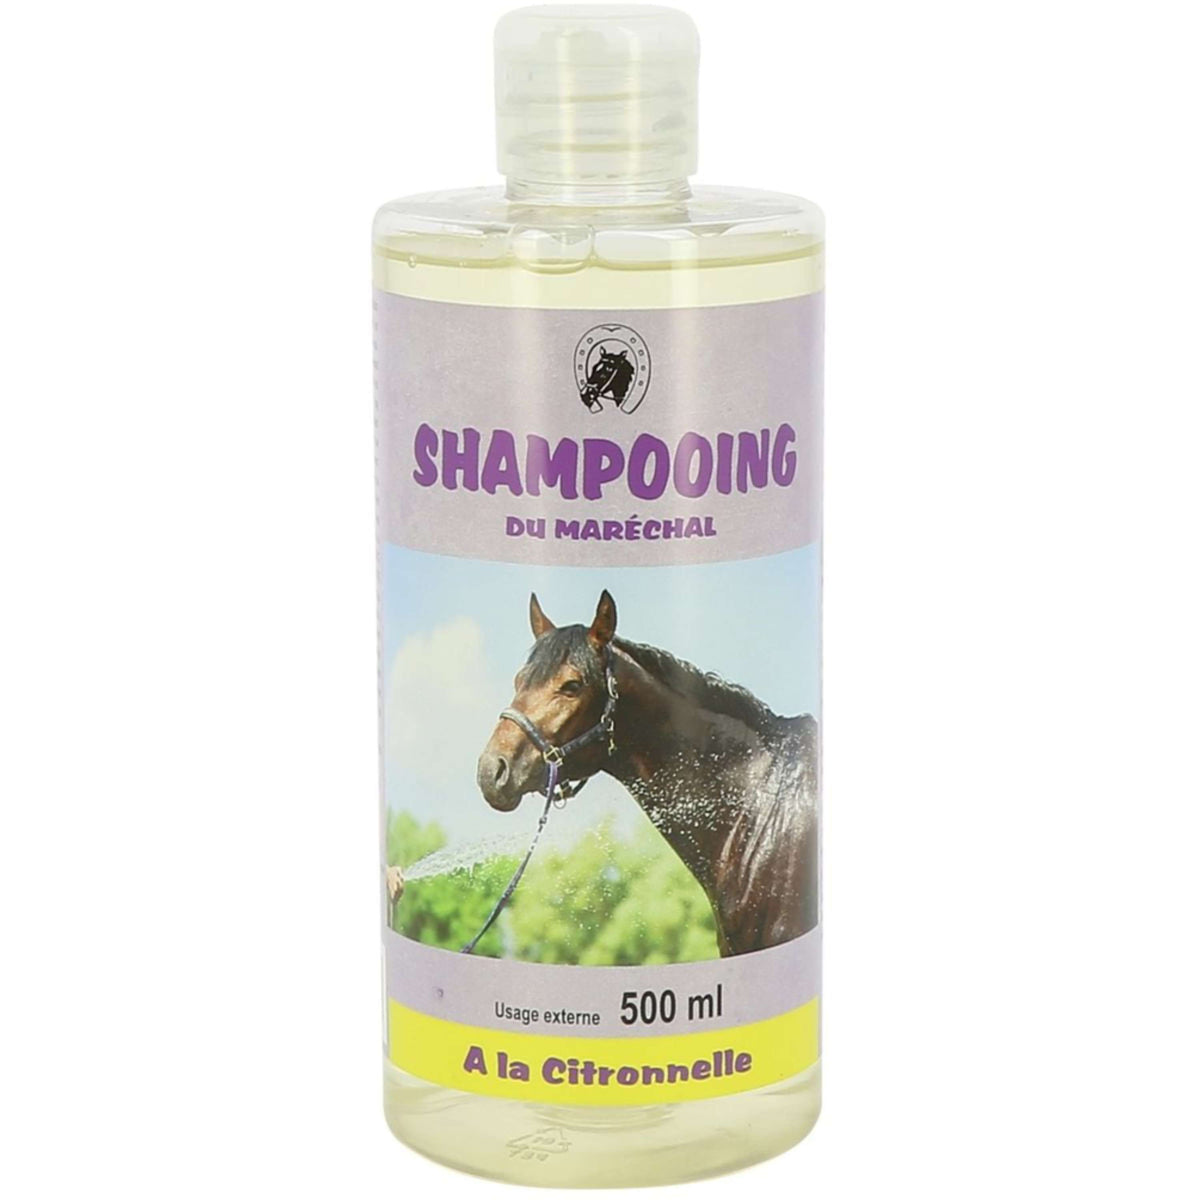 ODM Shampoo Citronella